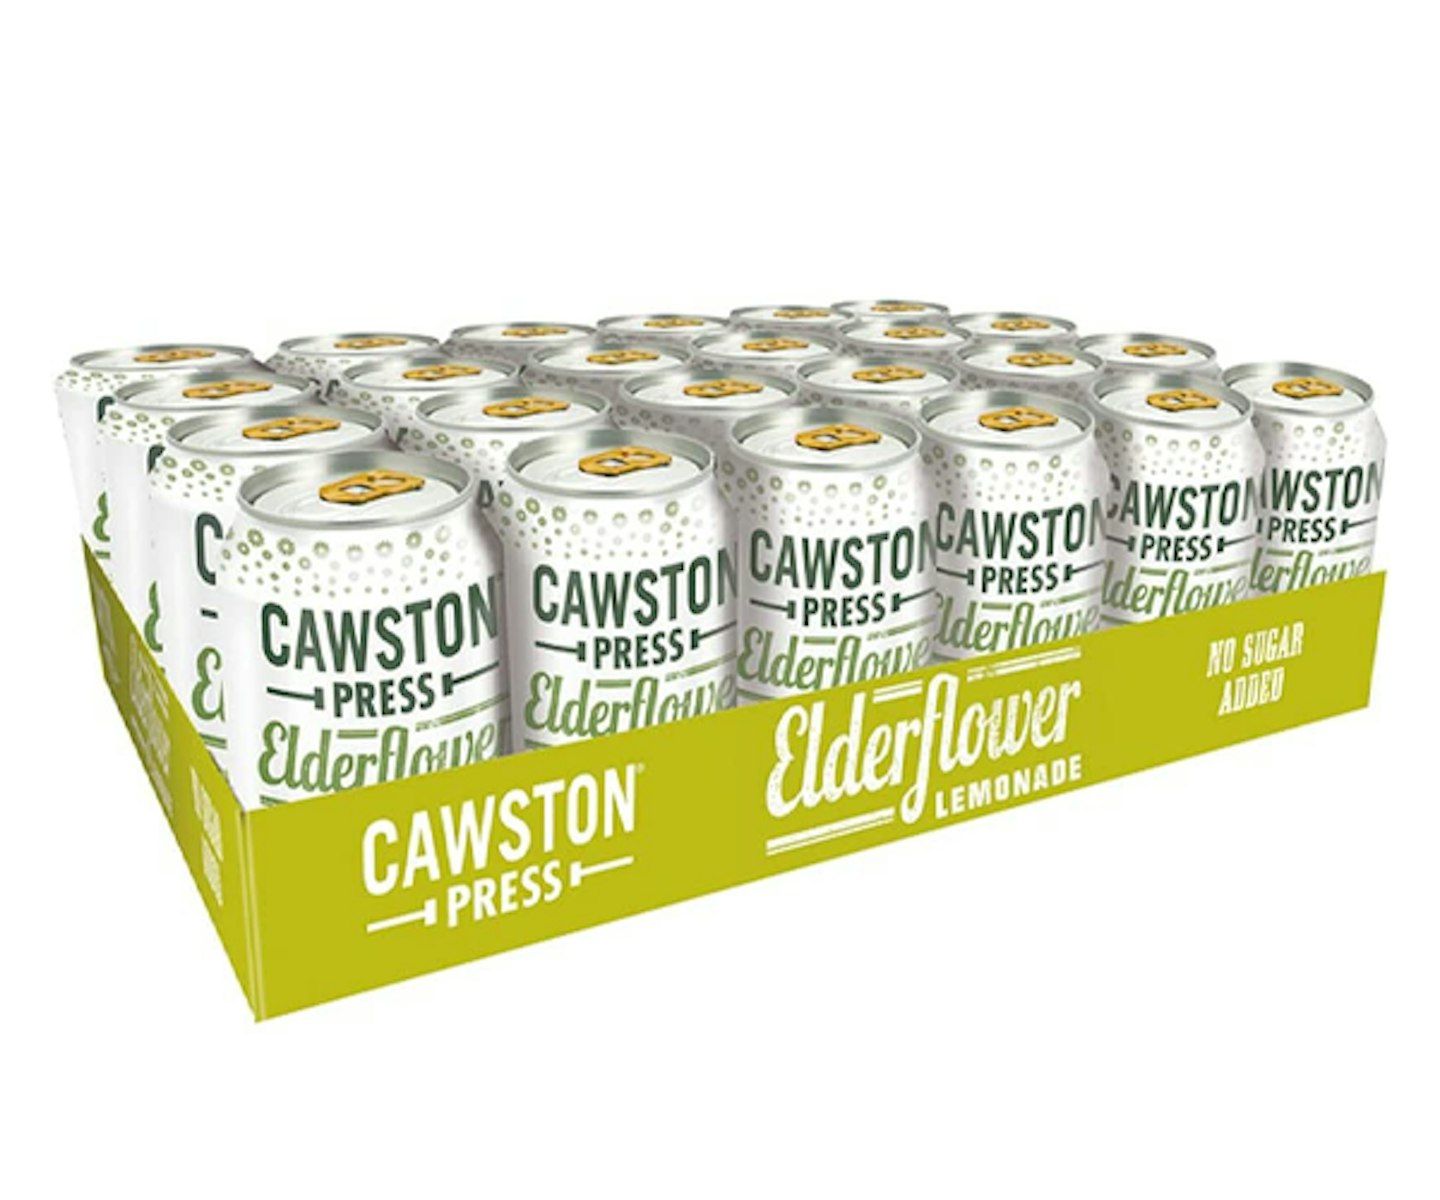 Cawston Press Fizzy Drink Elderflower Cans